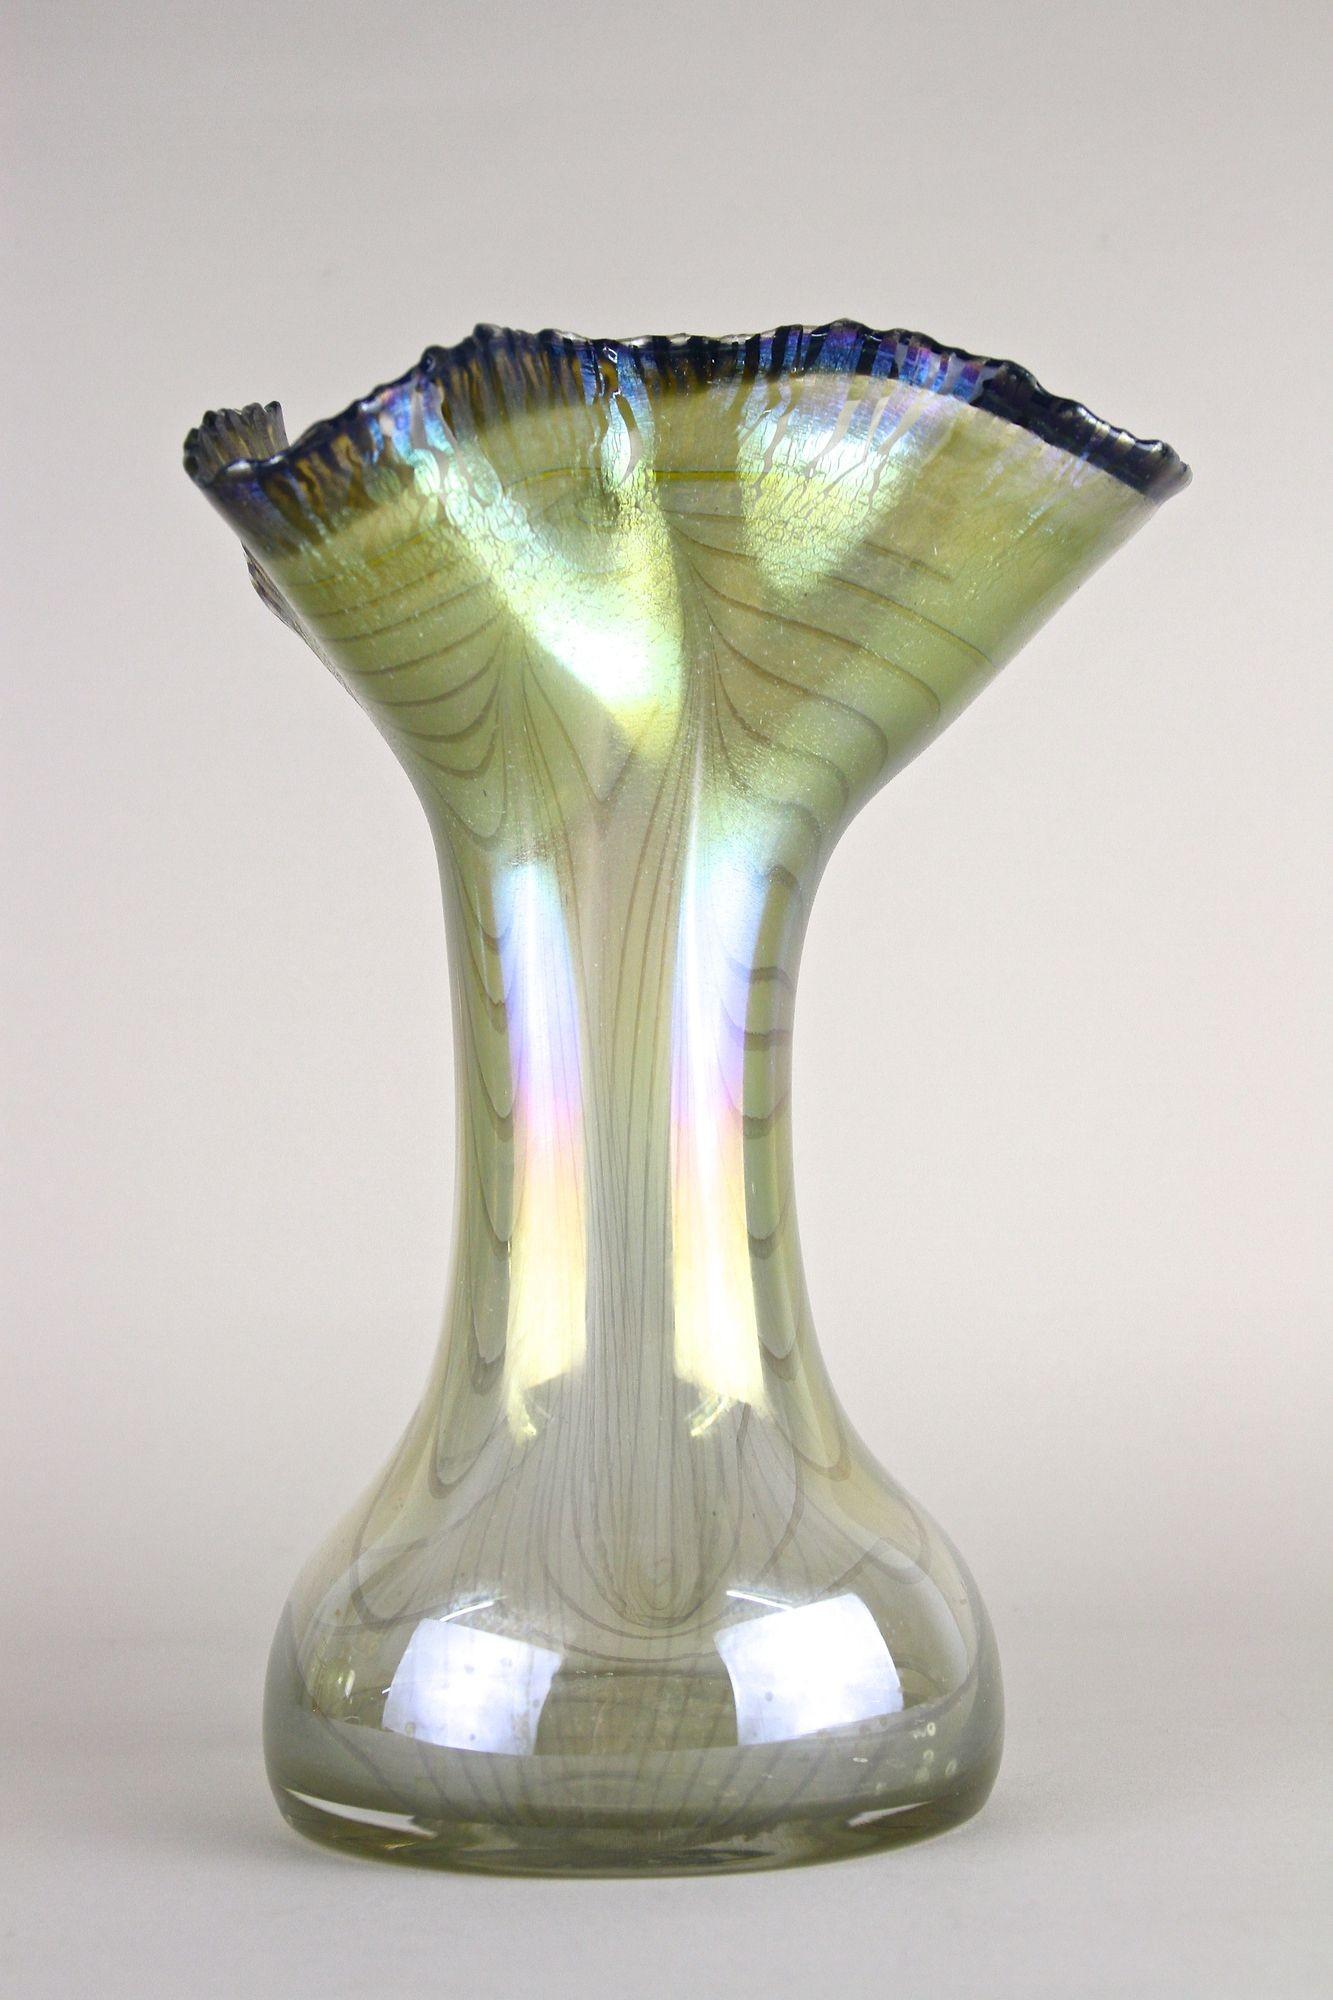 Vase en verre du 20e siècle d'une beauté étonnante et d'une rareté absolue, réalisé en 1982 par le célèbre artiste verrier allemand Erwin Eisch (1927 - 2022). Le nom d'Erwin Eisch est inextricablement lié au mouvement international du verre de